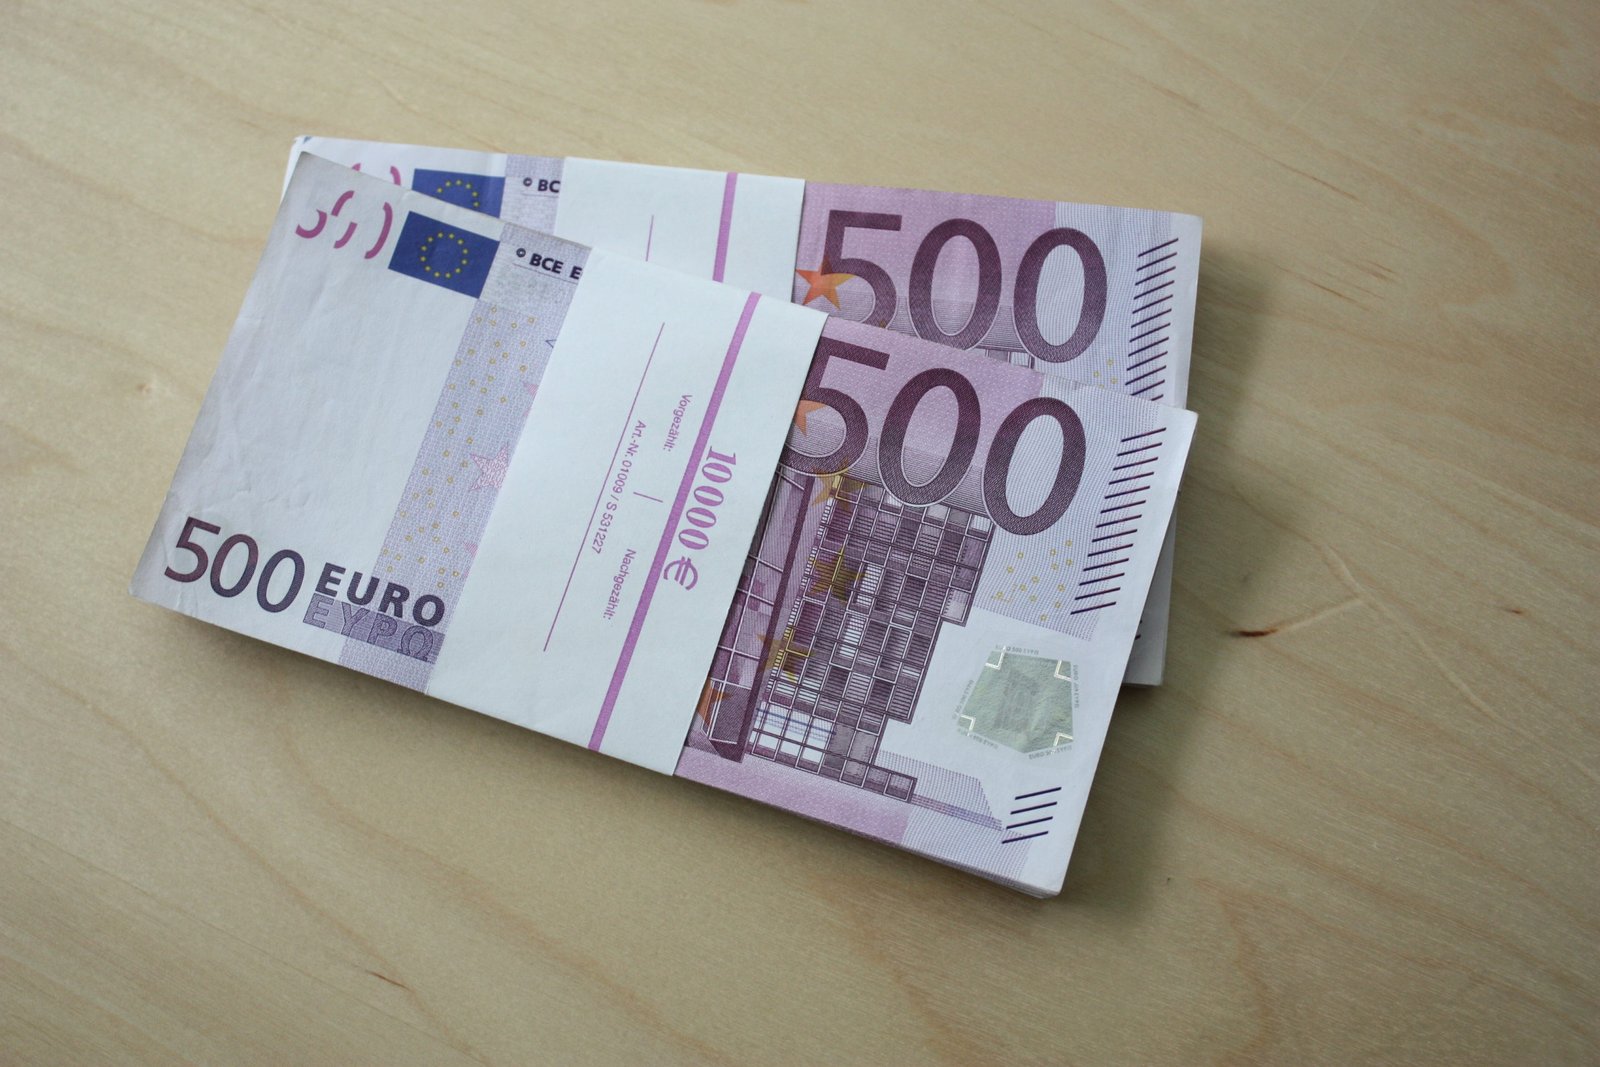 Quando e para quê você deve investir 1000 euros?